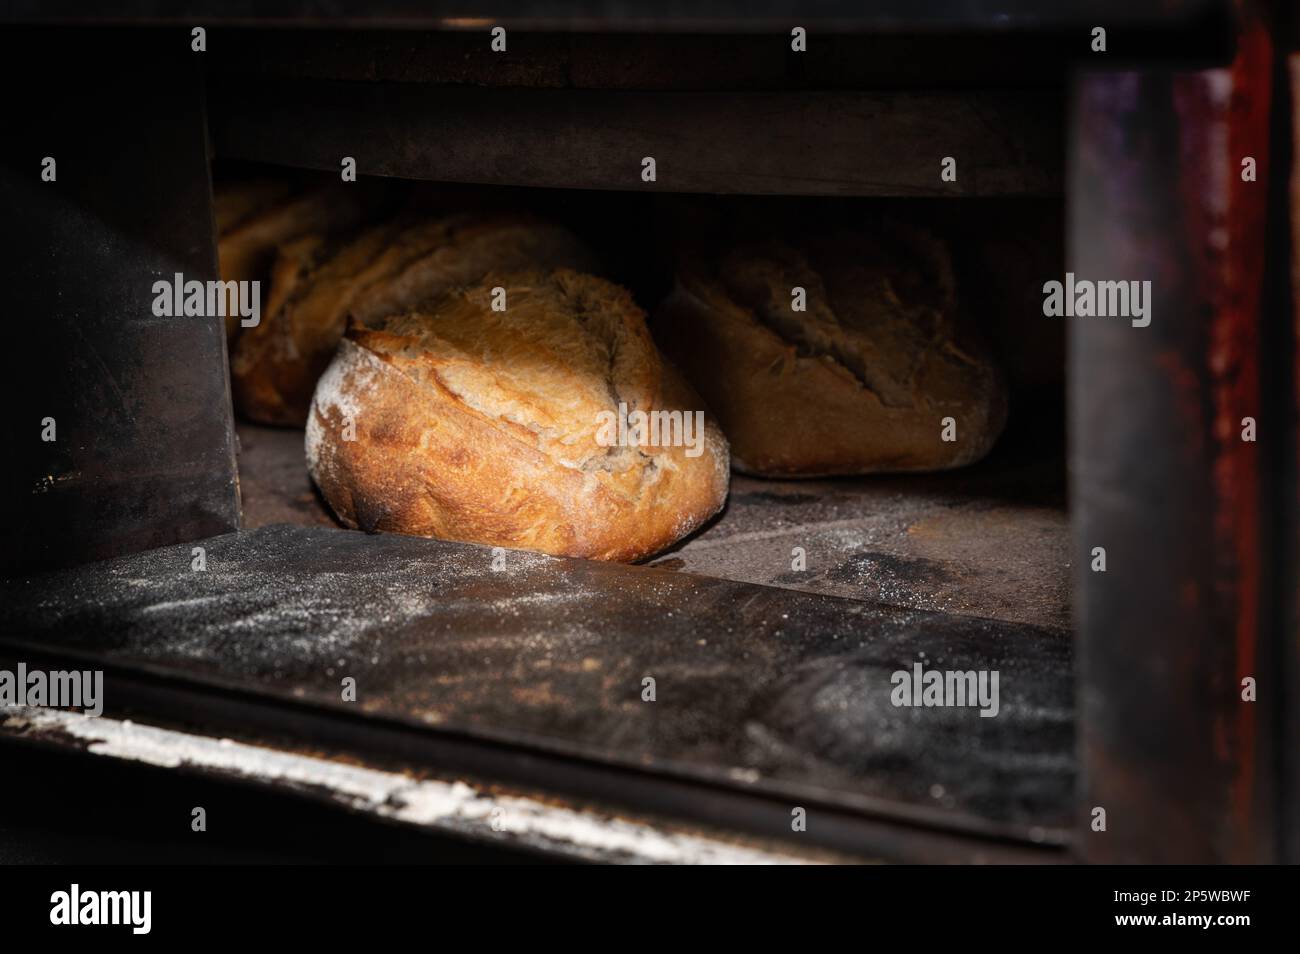 Du pain français de qualité, spécial et frais Banque D'Images